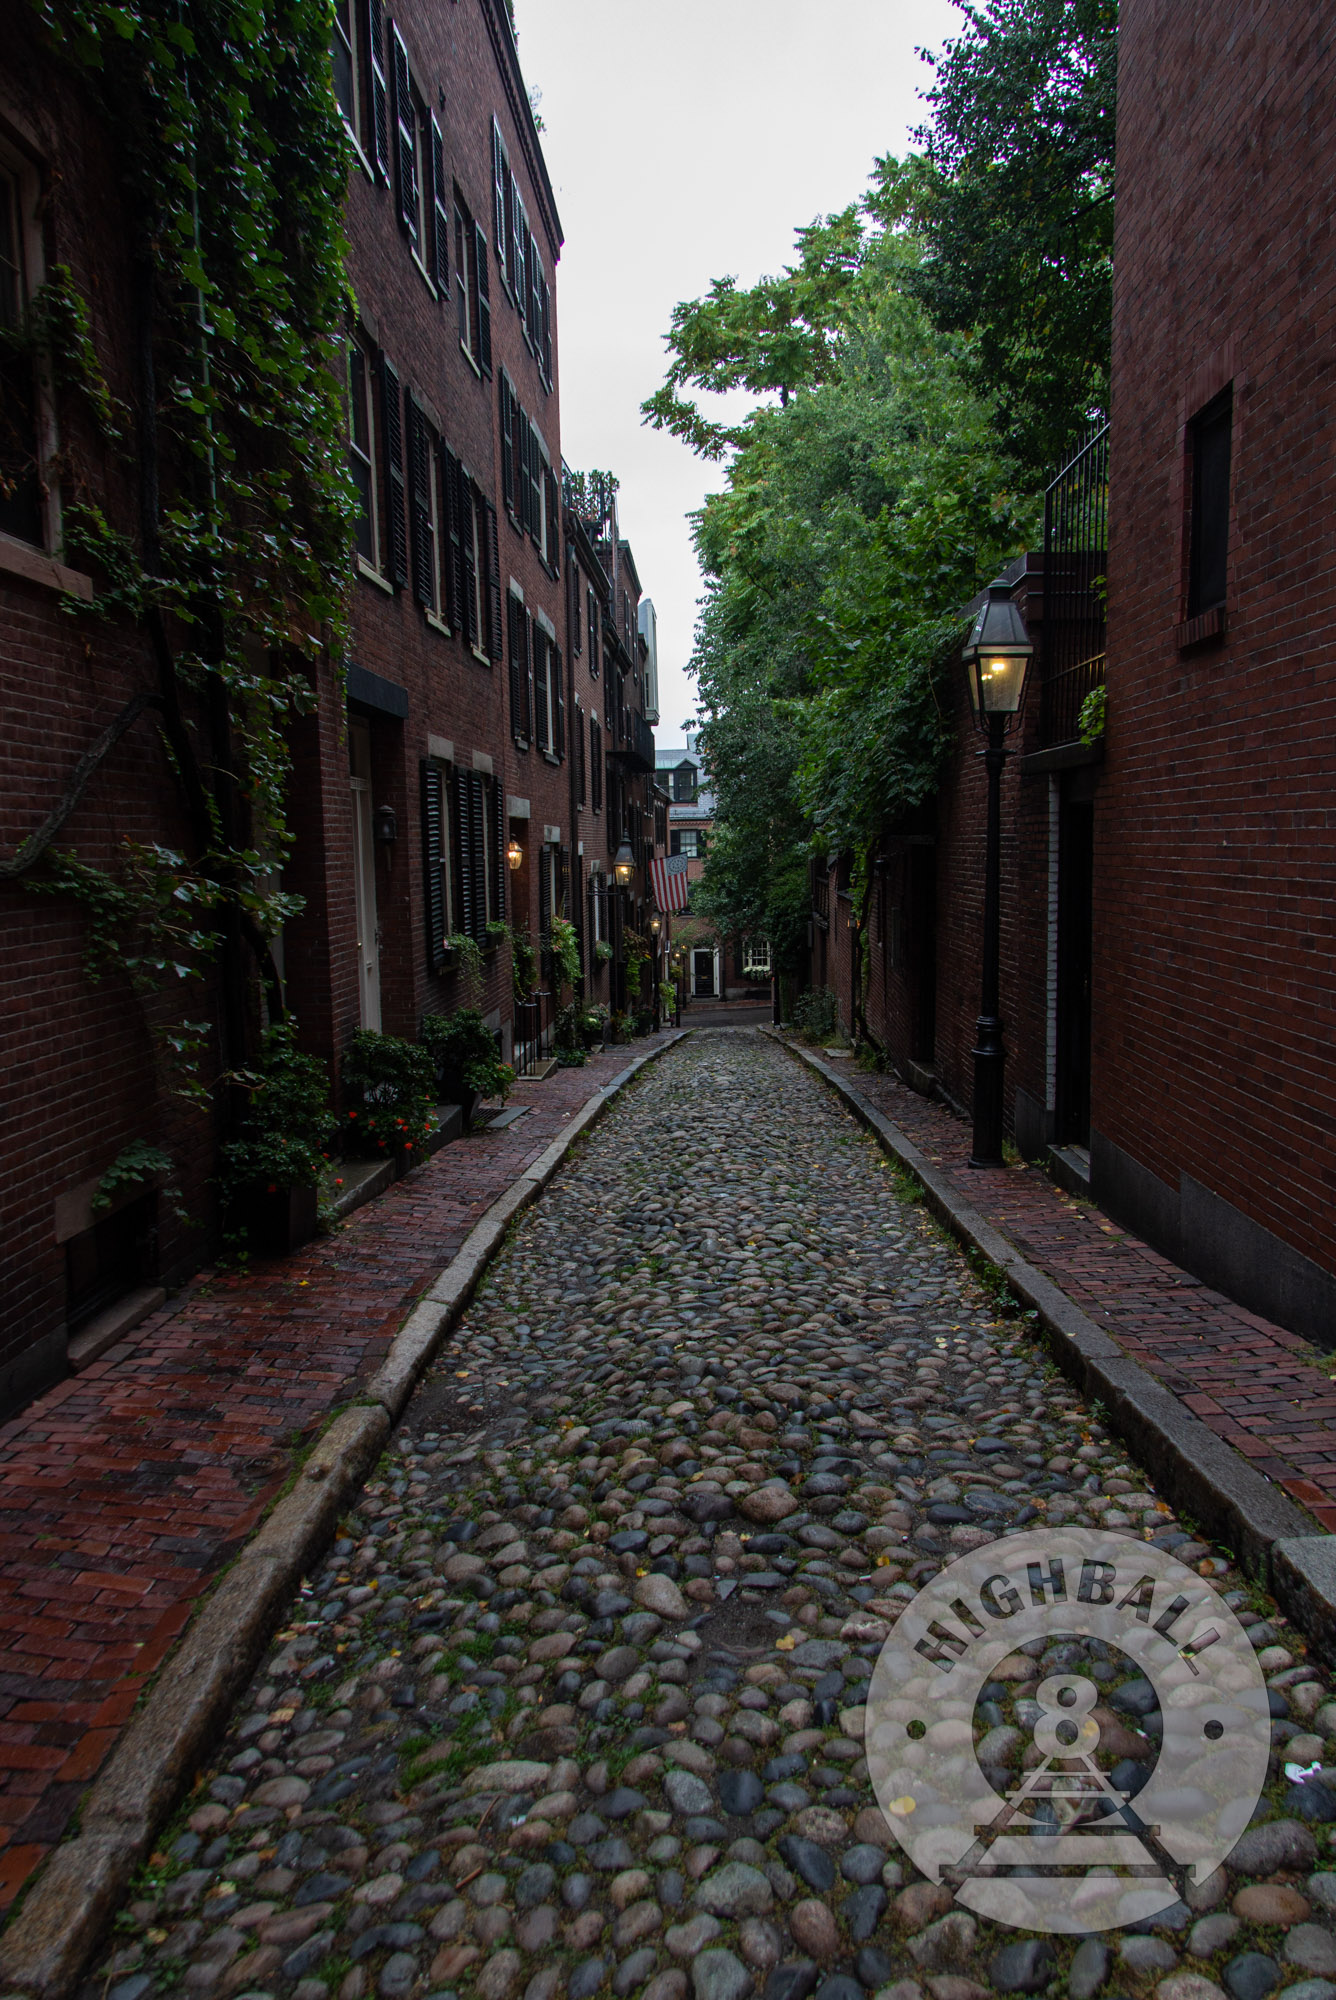 The Beacon Hill neighborhood, Boston, Massachusetts, USA, 2014.